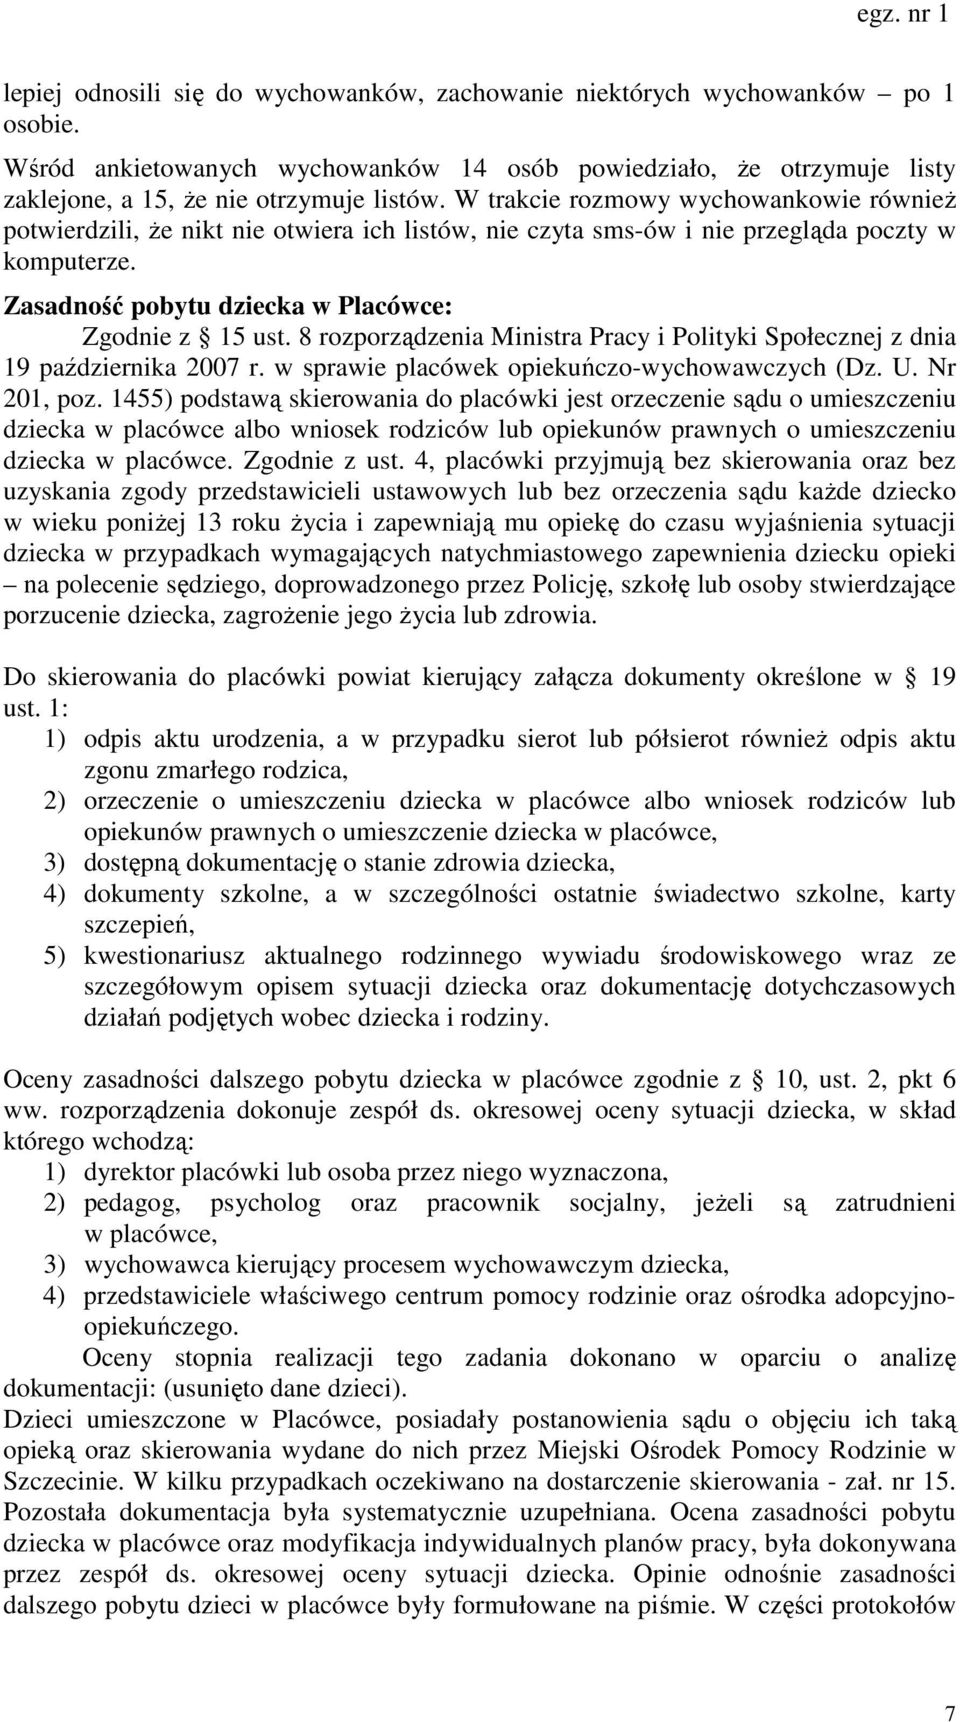 8 rozporządzenia Ministra Pracy i Polityki Społecznej z dnia 19 października 2007 r. w sprawie placówek opiekuńczo-wychowawczych (Dz. U. Nr 201, poz.